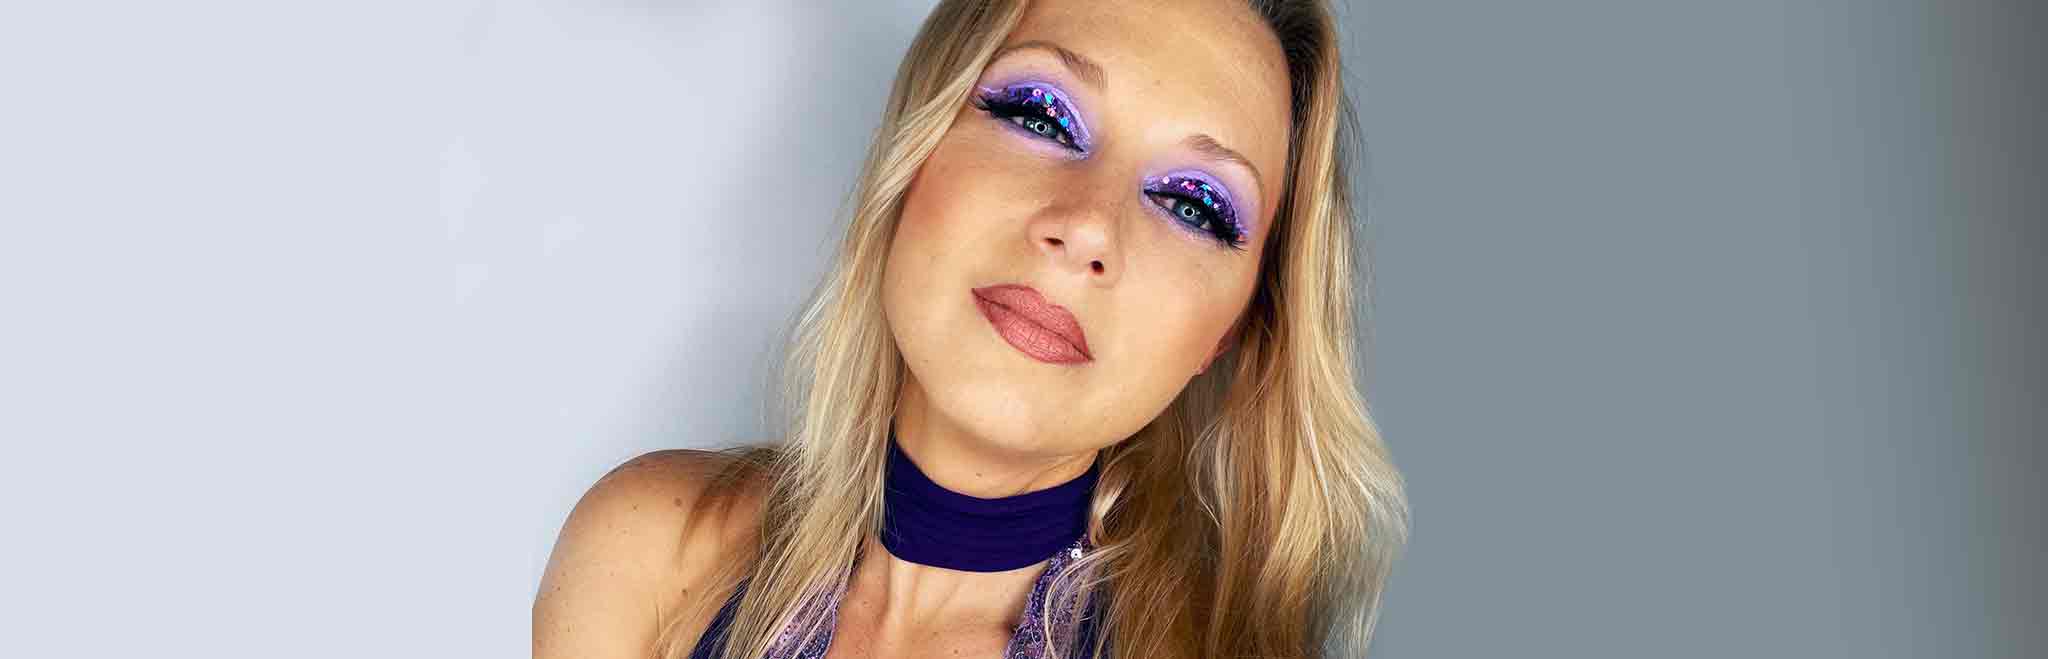 femme blonde maquillage violet à paillette bouche rose glamour